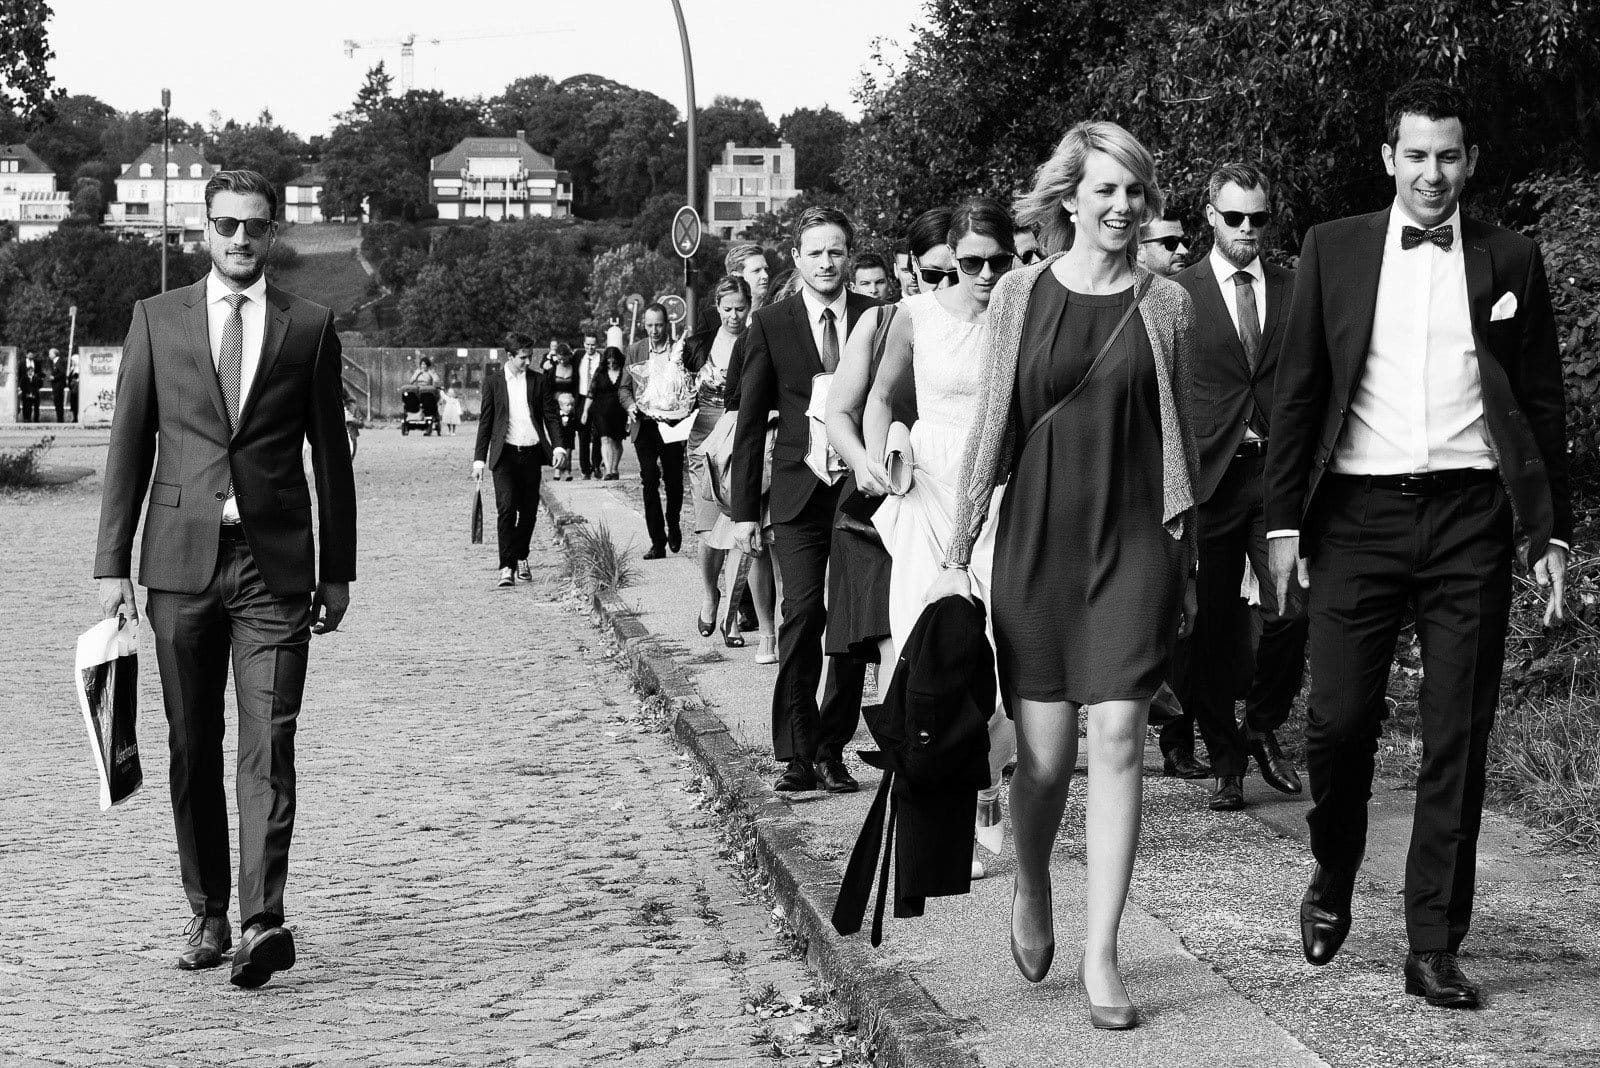 Die Hochzeitsgäste auf dem Weg vom Bubendeyufer zur Villa am Jachthafen bei Hohzeitsfotografie Hamburg